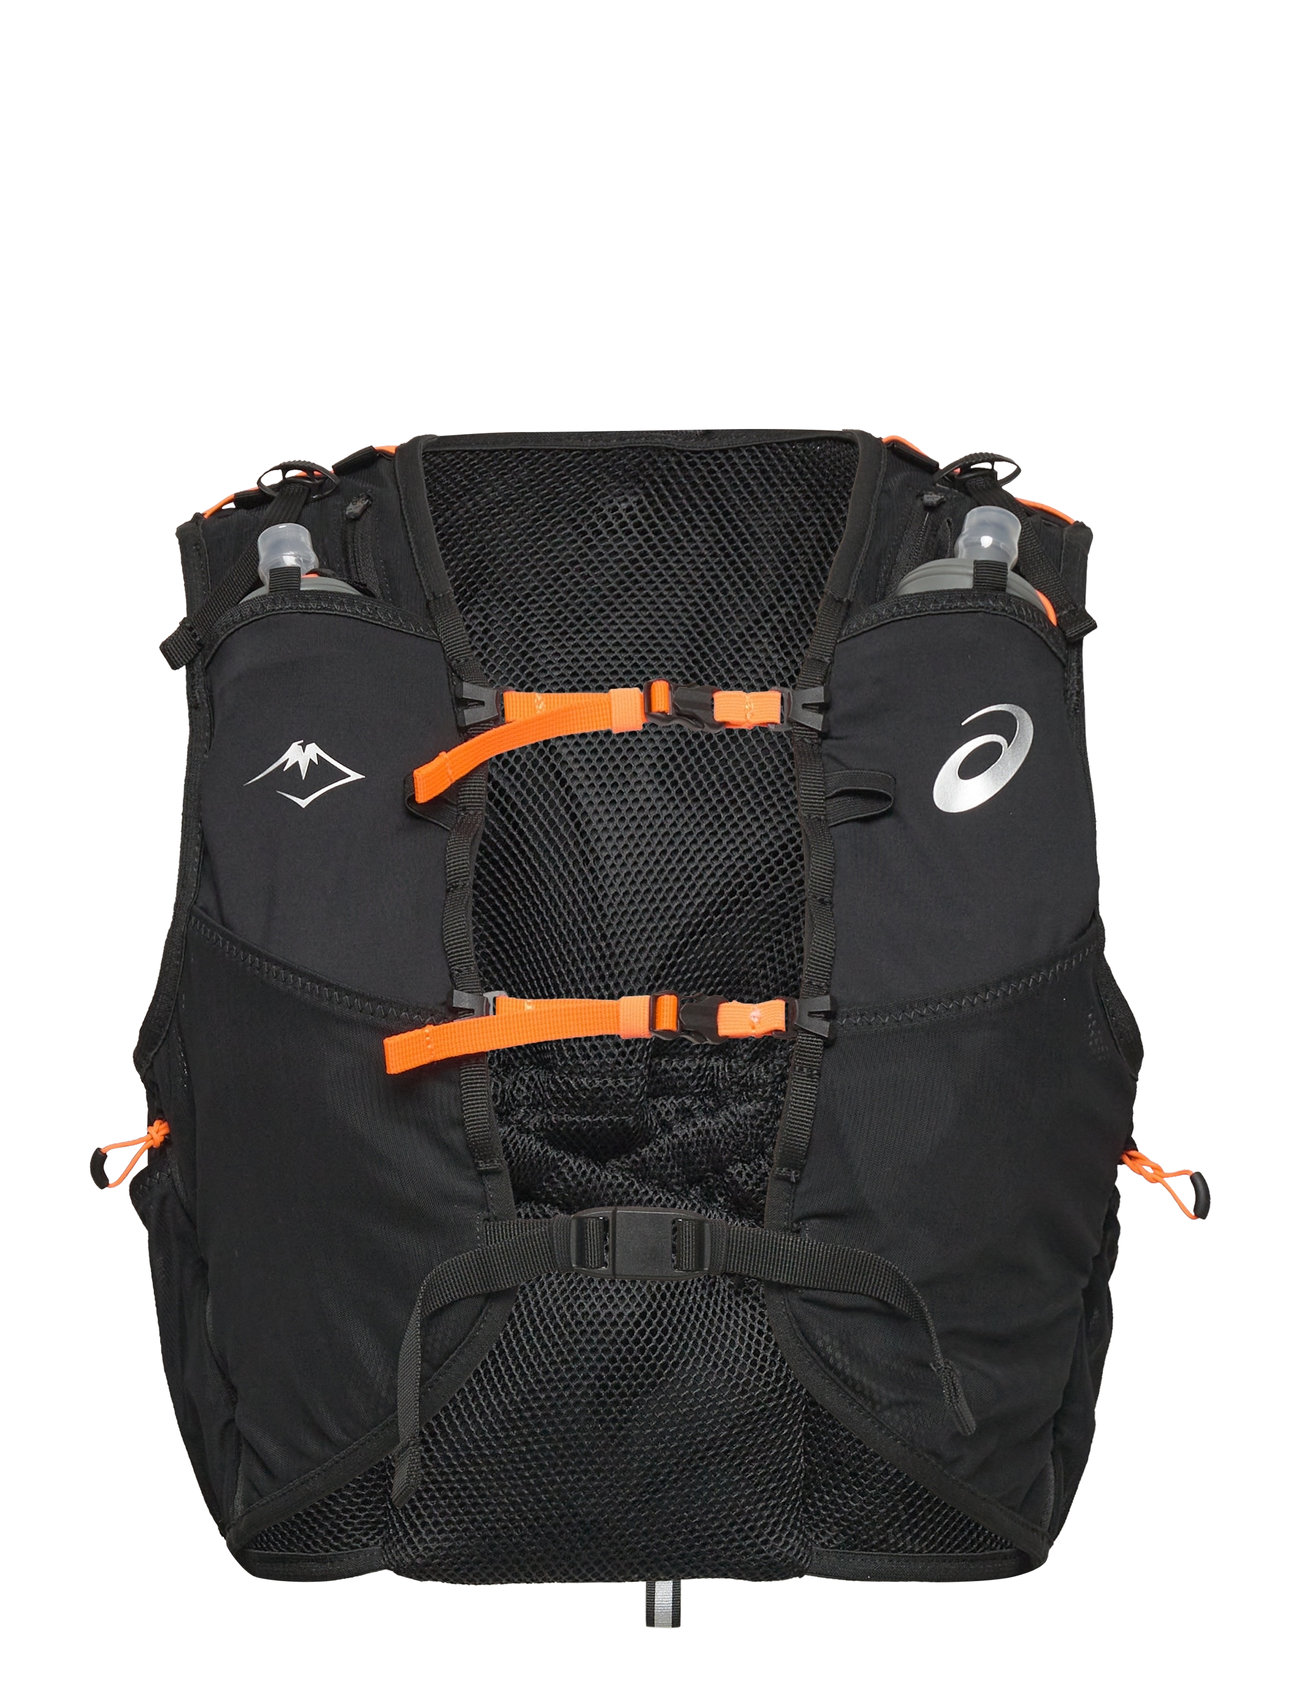 Fujitrail Hydration Vest 7L Sport Sports Equipment Running Accessories Black Asics